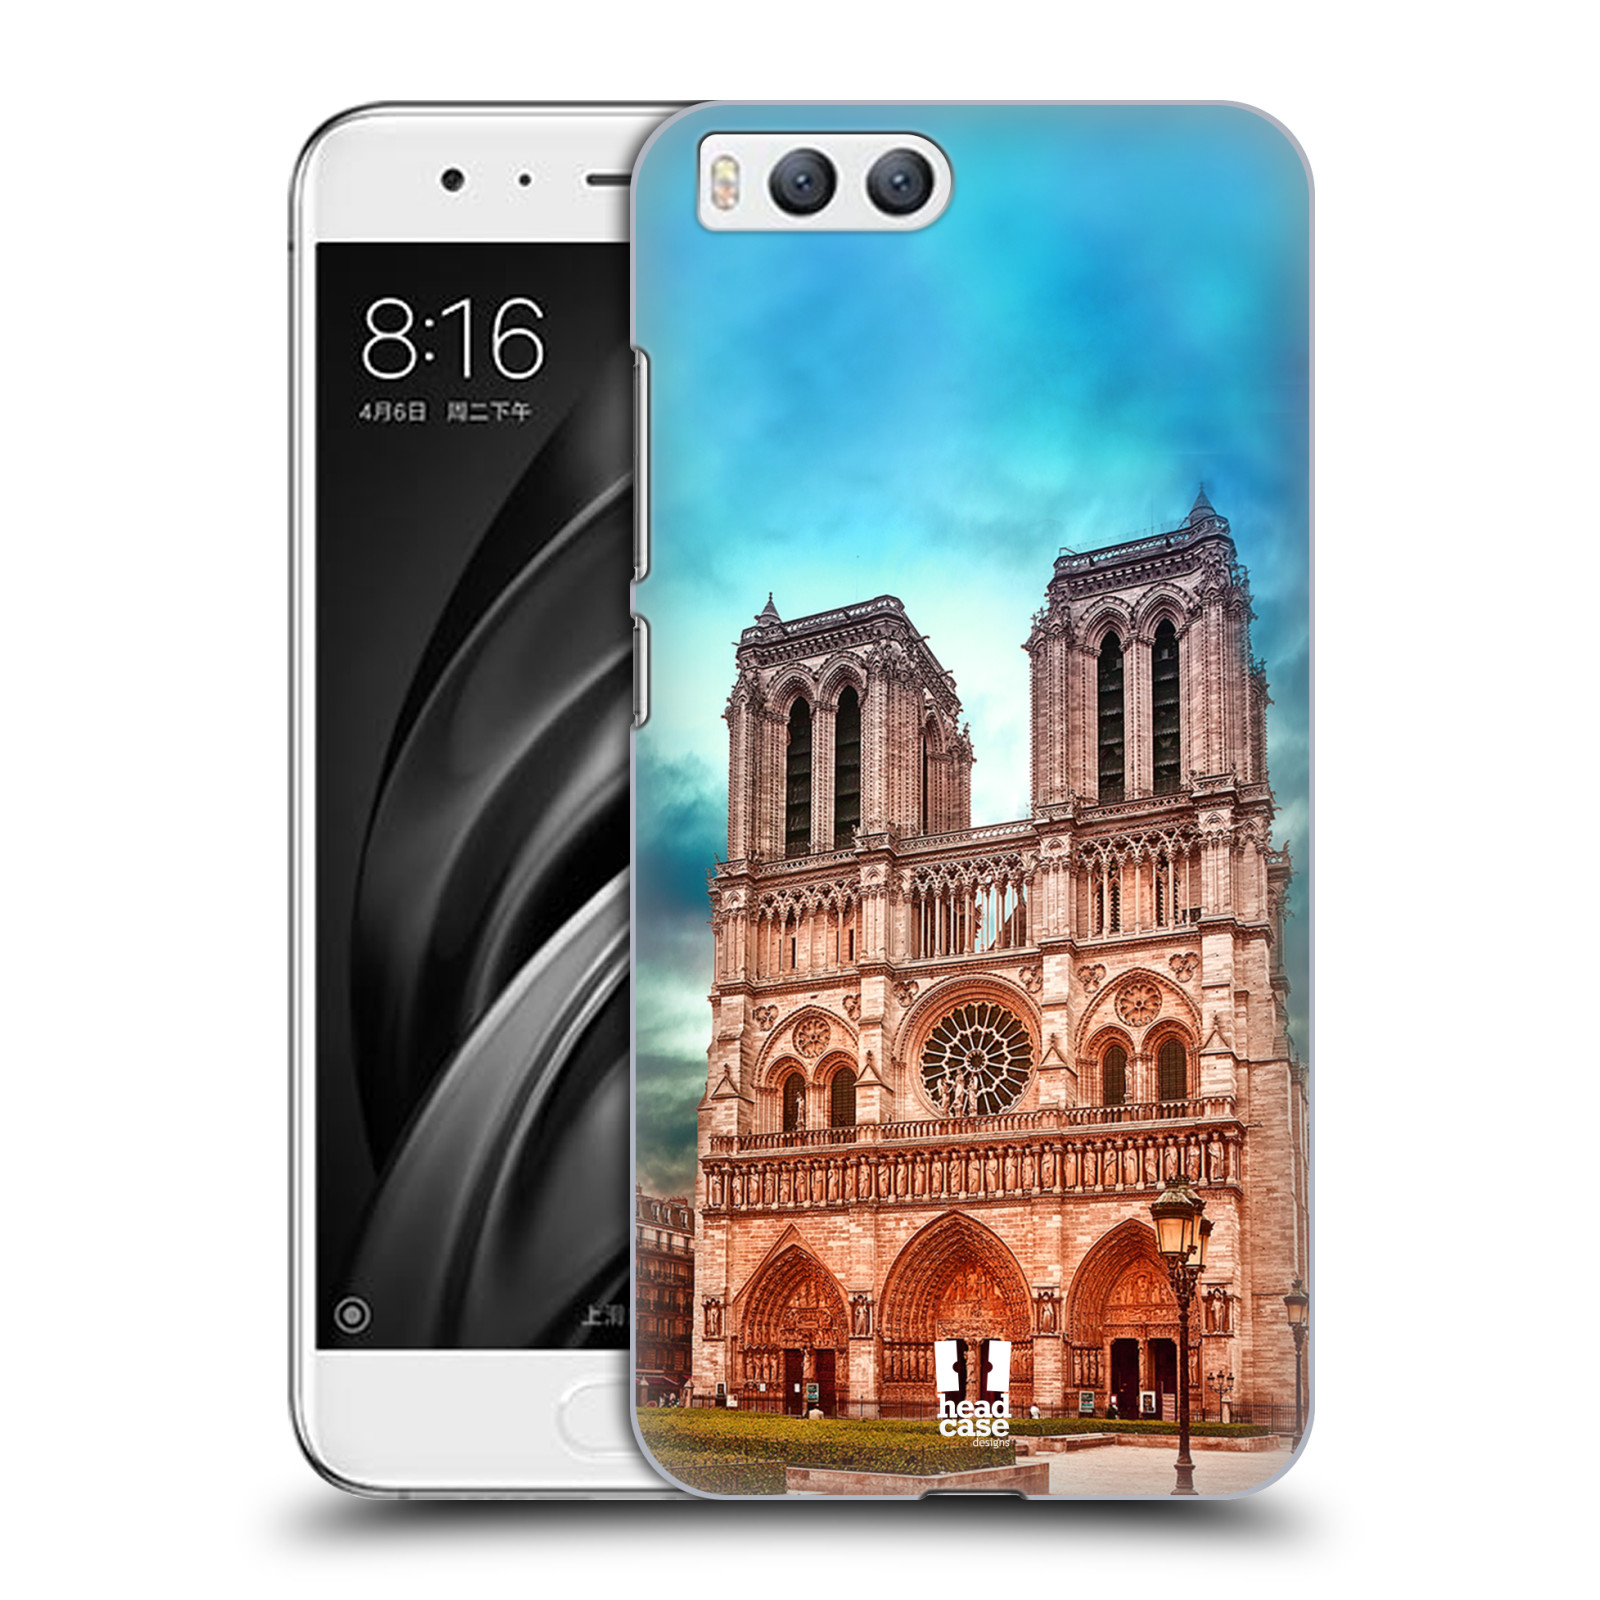 Pouzdro na mobil Xiaomi MI6 - HEAD CASE - historická místa katedrála Notre Dame